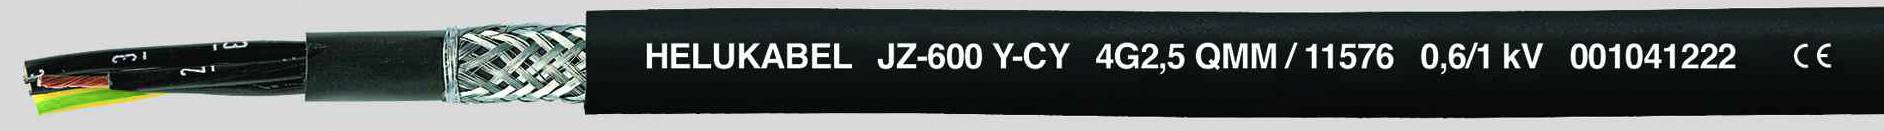 HELUKABEL JZ-600-Y-CY Steuerleitung 7 G 1.50 mm² Schwarz 11551-1000 1000 m